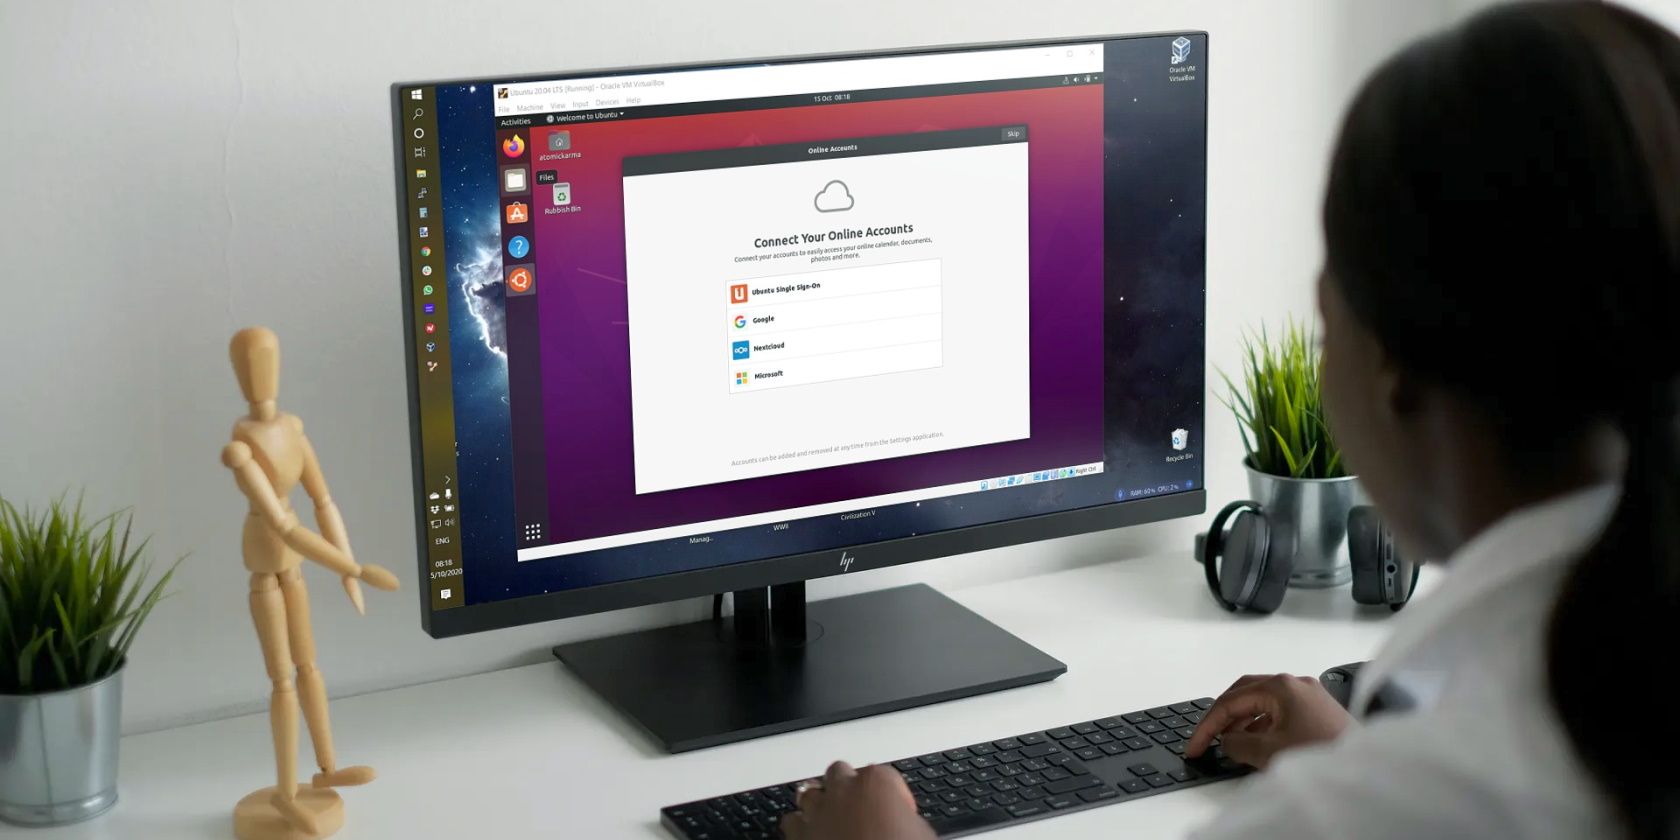 Install Ubuntu in VirtualBox